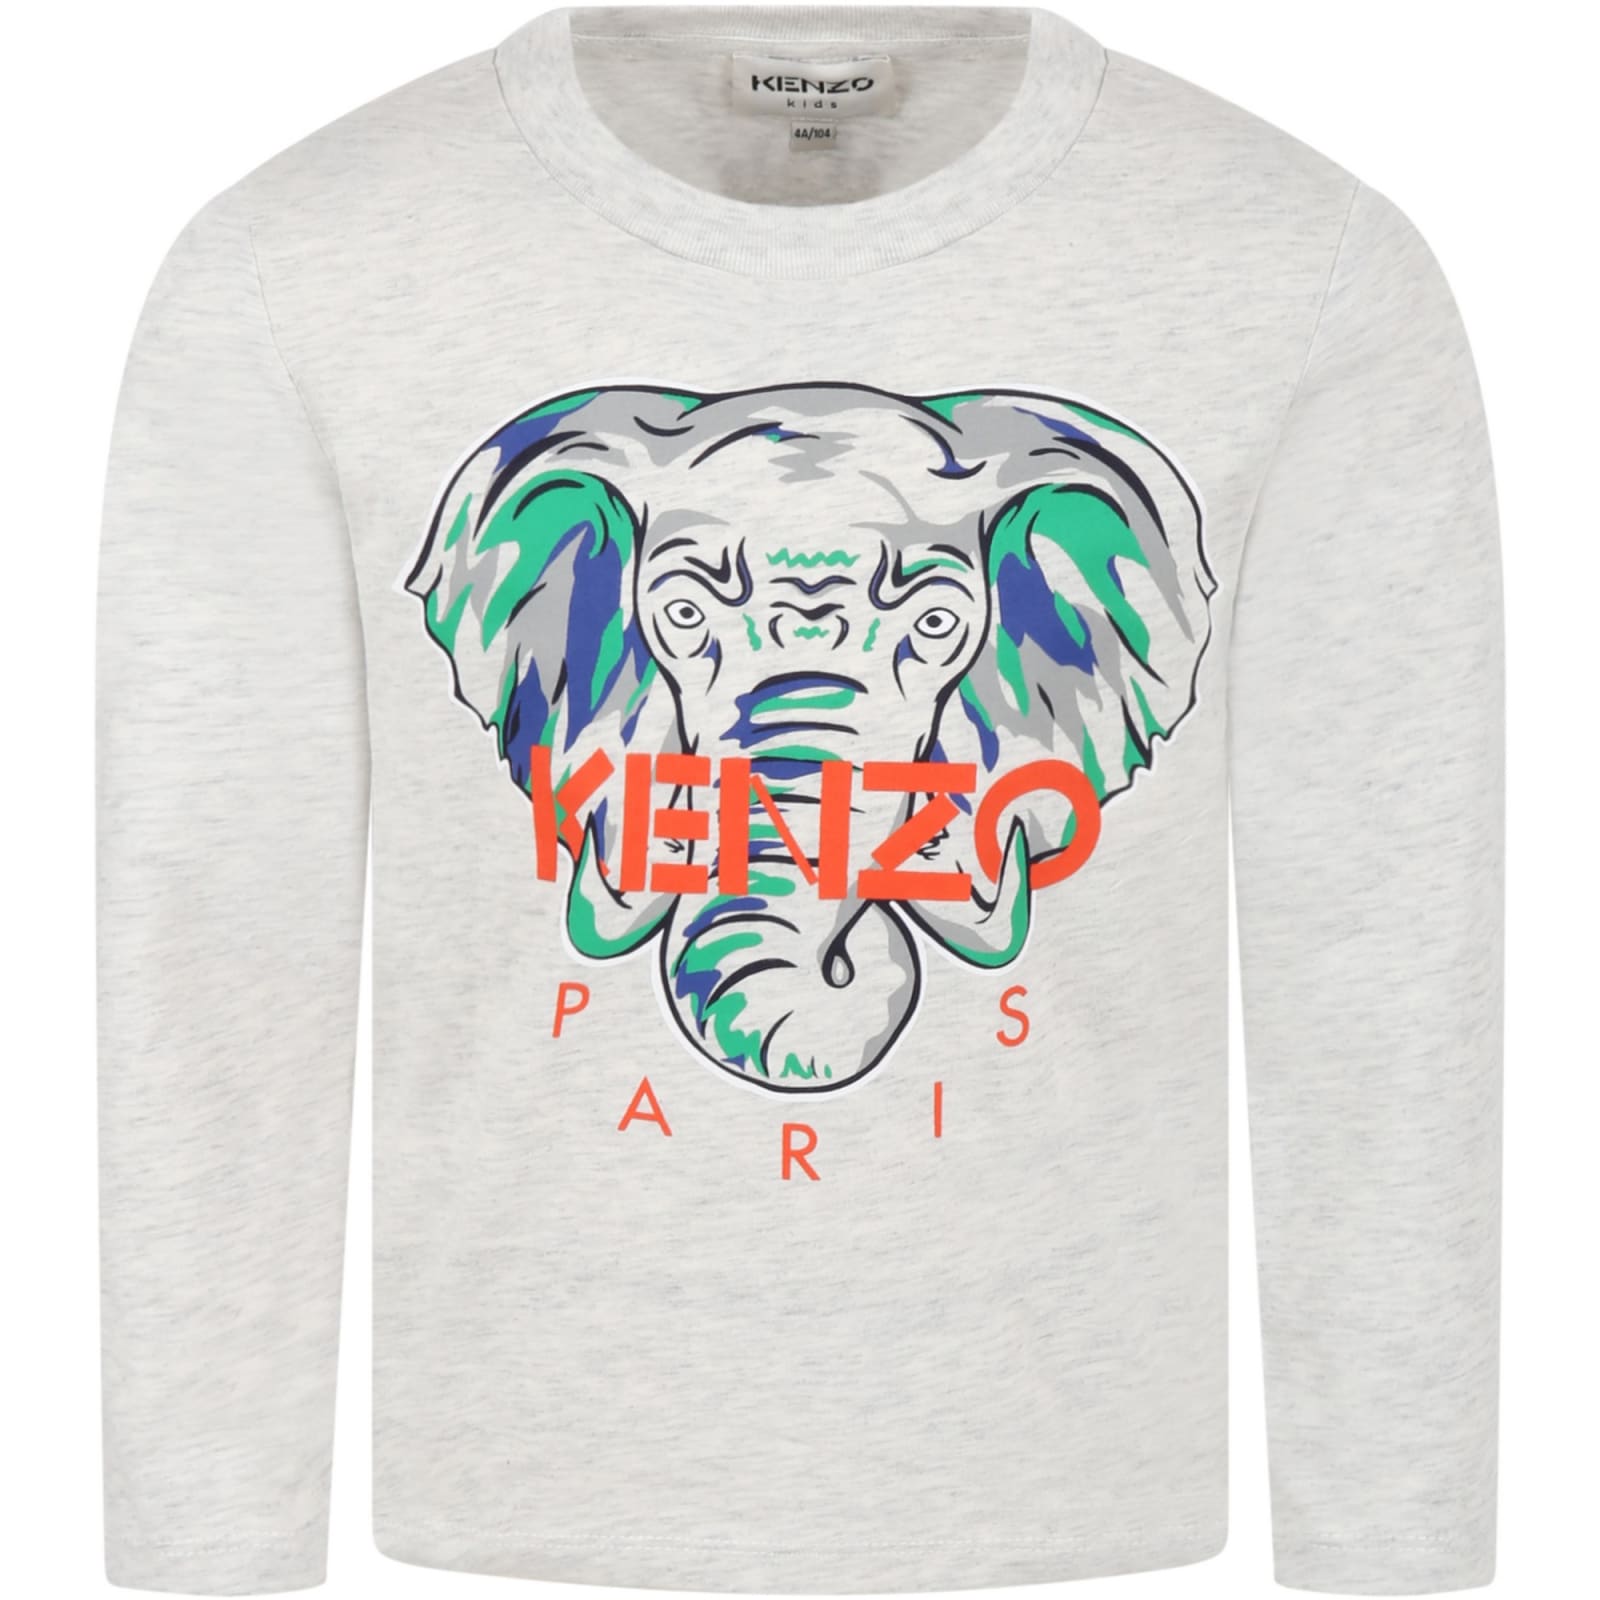 Kenzo Kids Grey T-shirt For Boy With Elephant